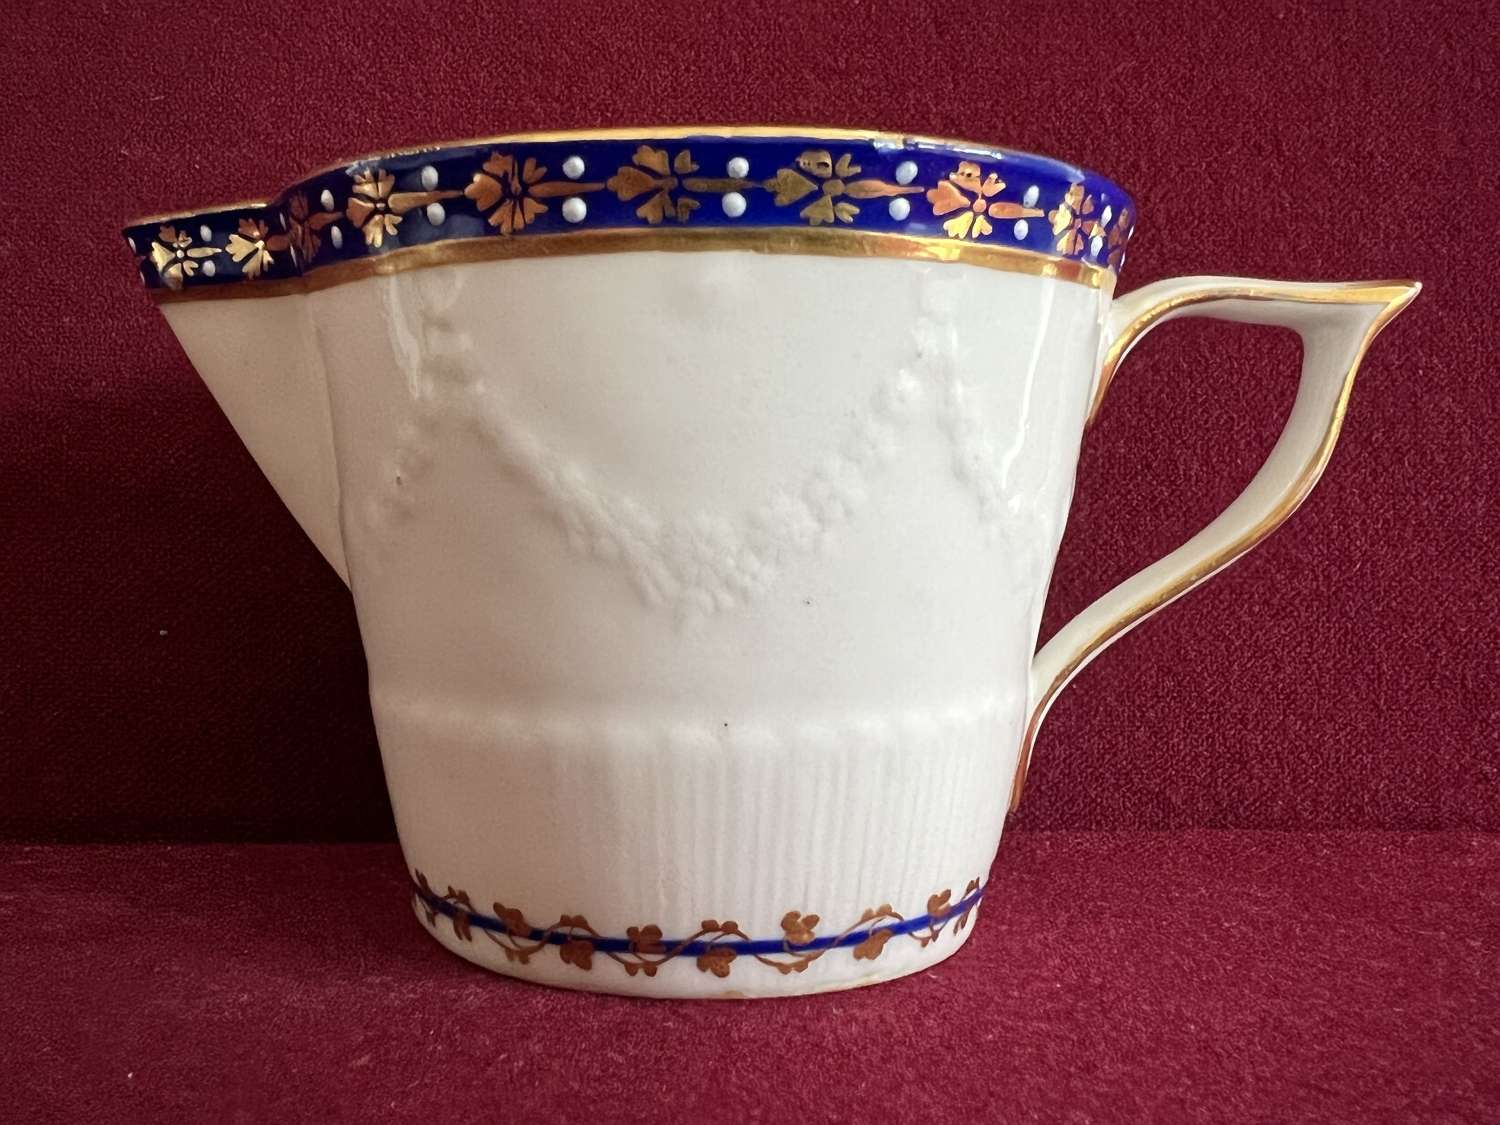 A Derby Porcelain Creamer in pattern number 14 c.1785